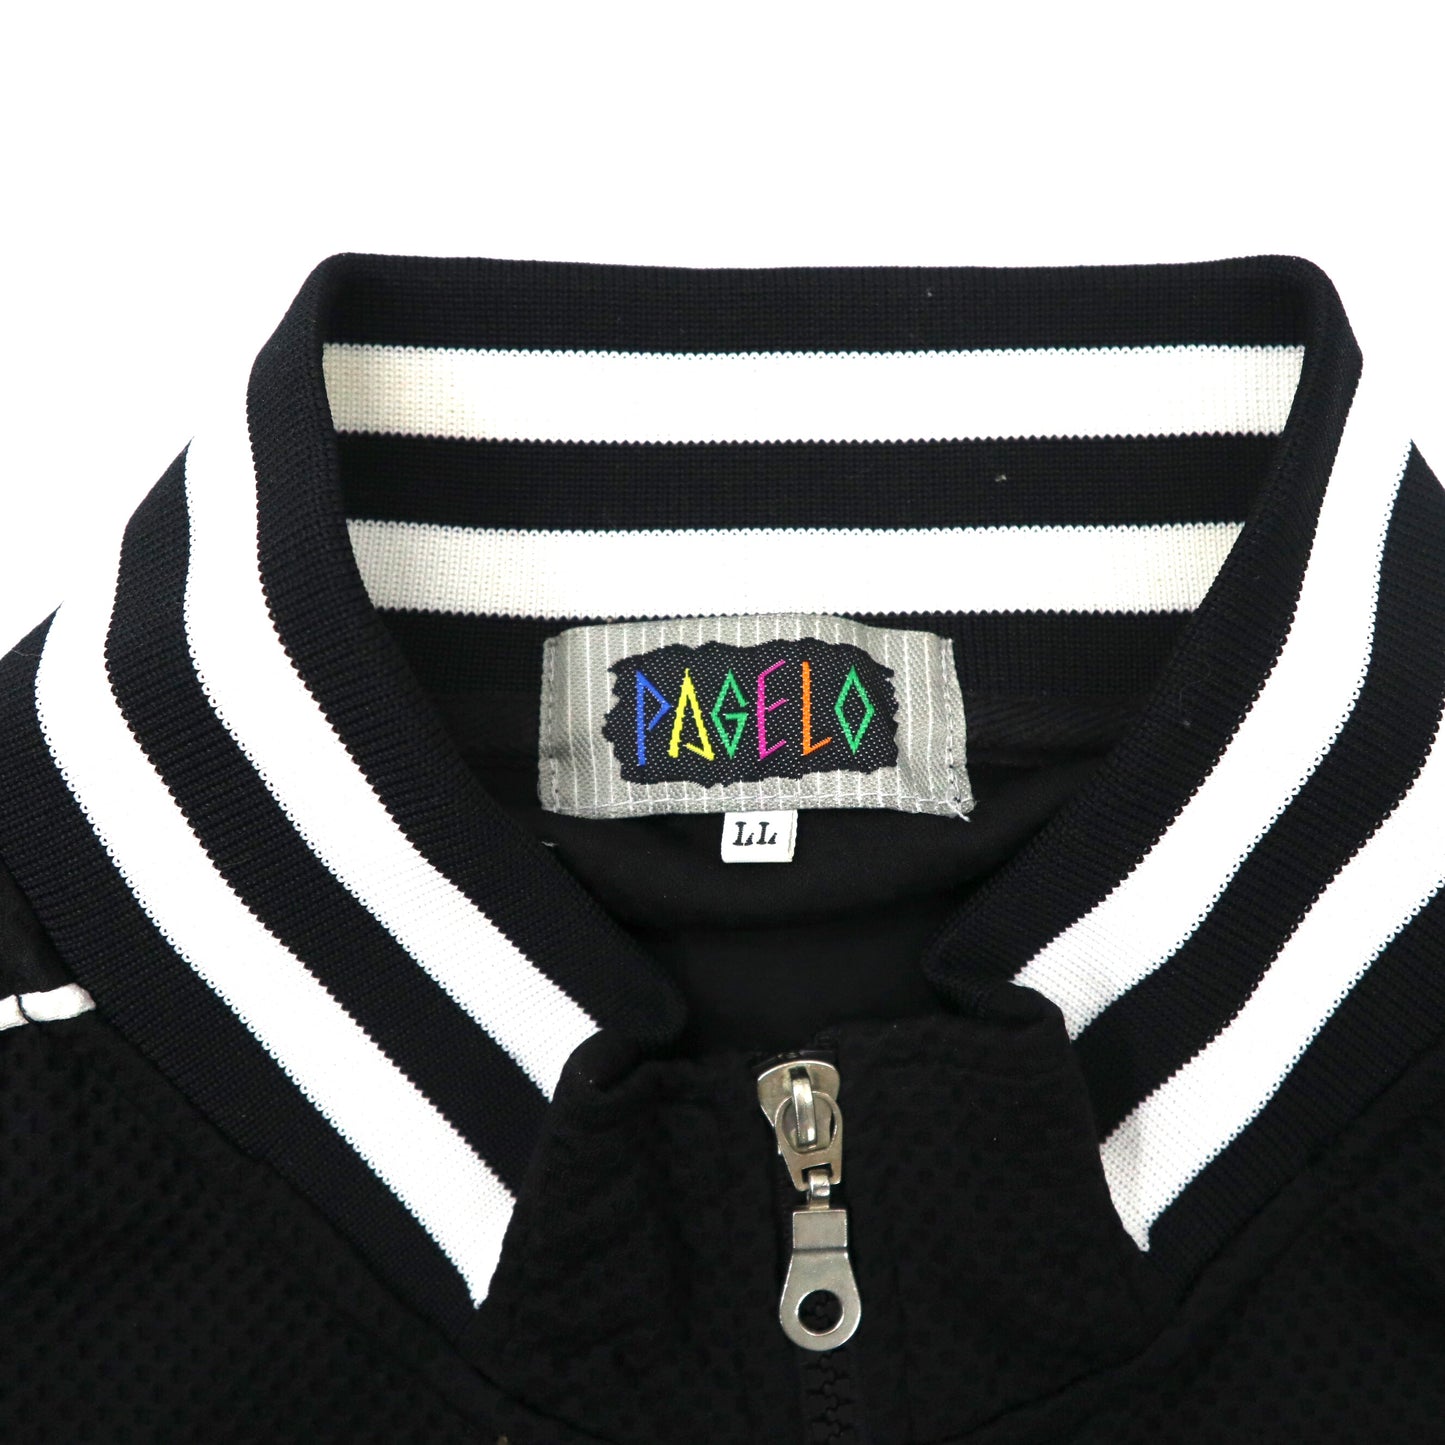 PAGELO トラックジャケット セットアップジャージ LL ブラック ポリエステル キャラクター刺繍 90年代